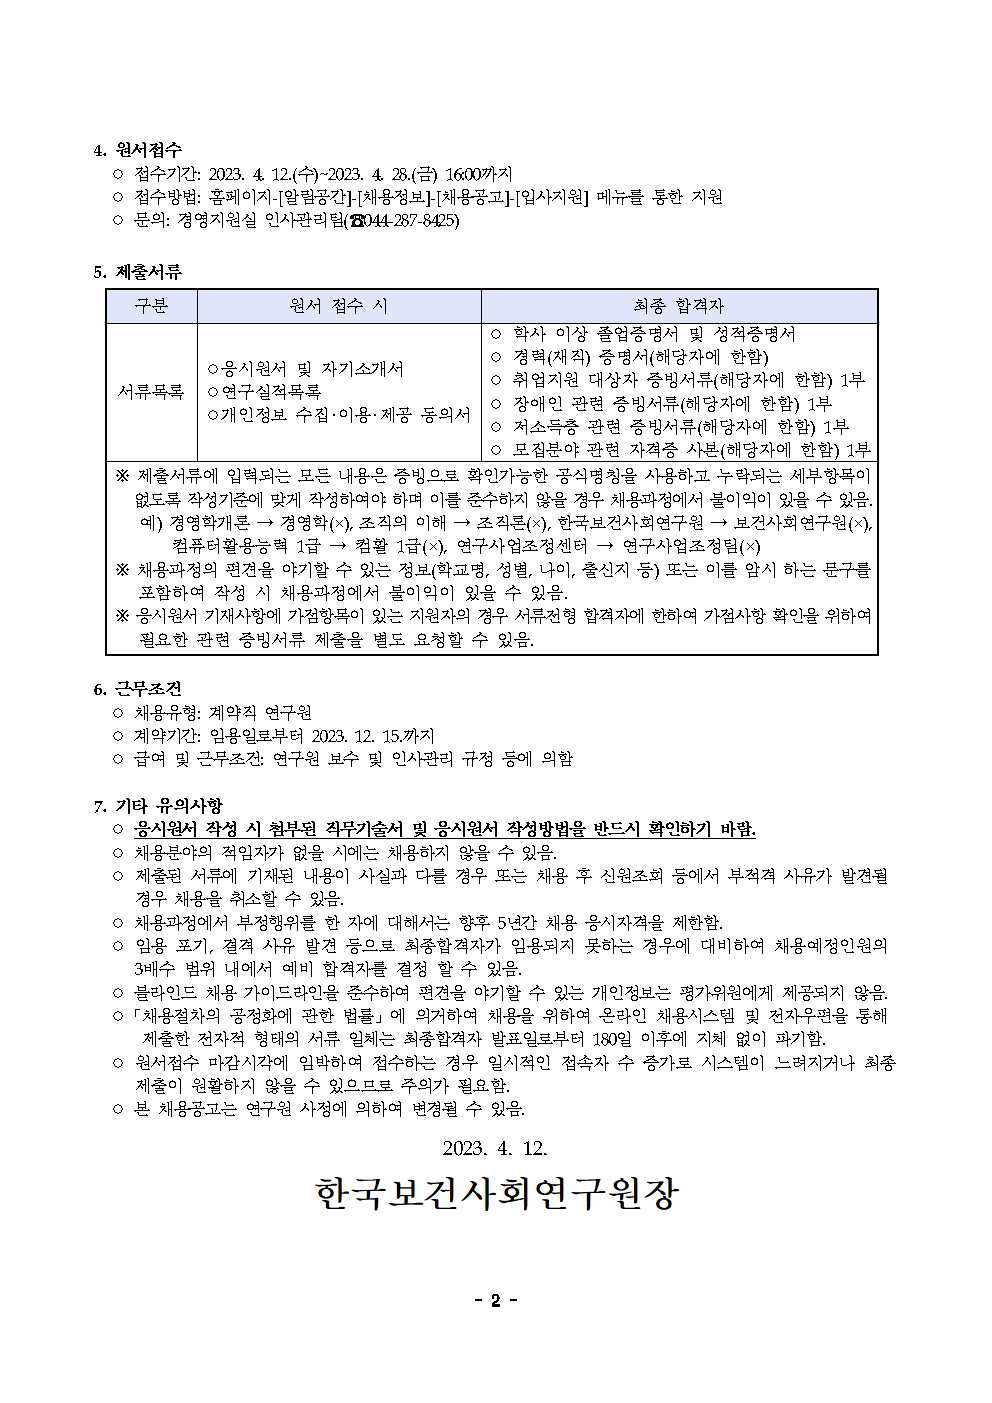 (2/2) [한국보건사회연구원] 계약직 연구원 채용(국제협력단) - 자세한 내용은 하단 참조